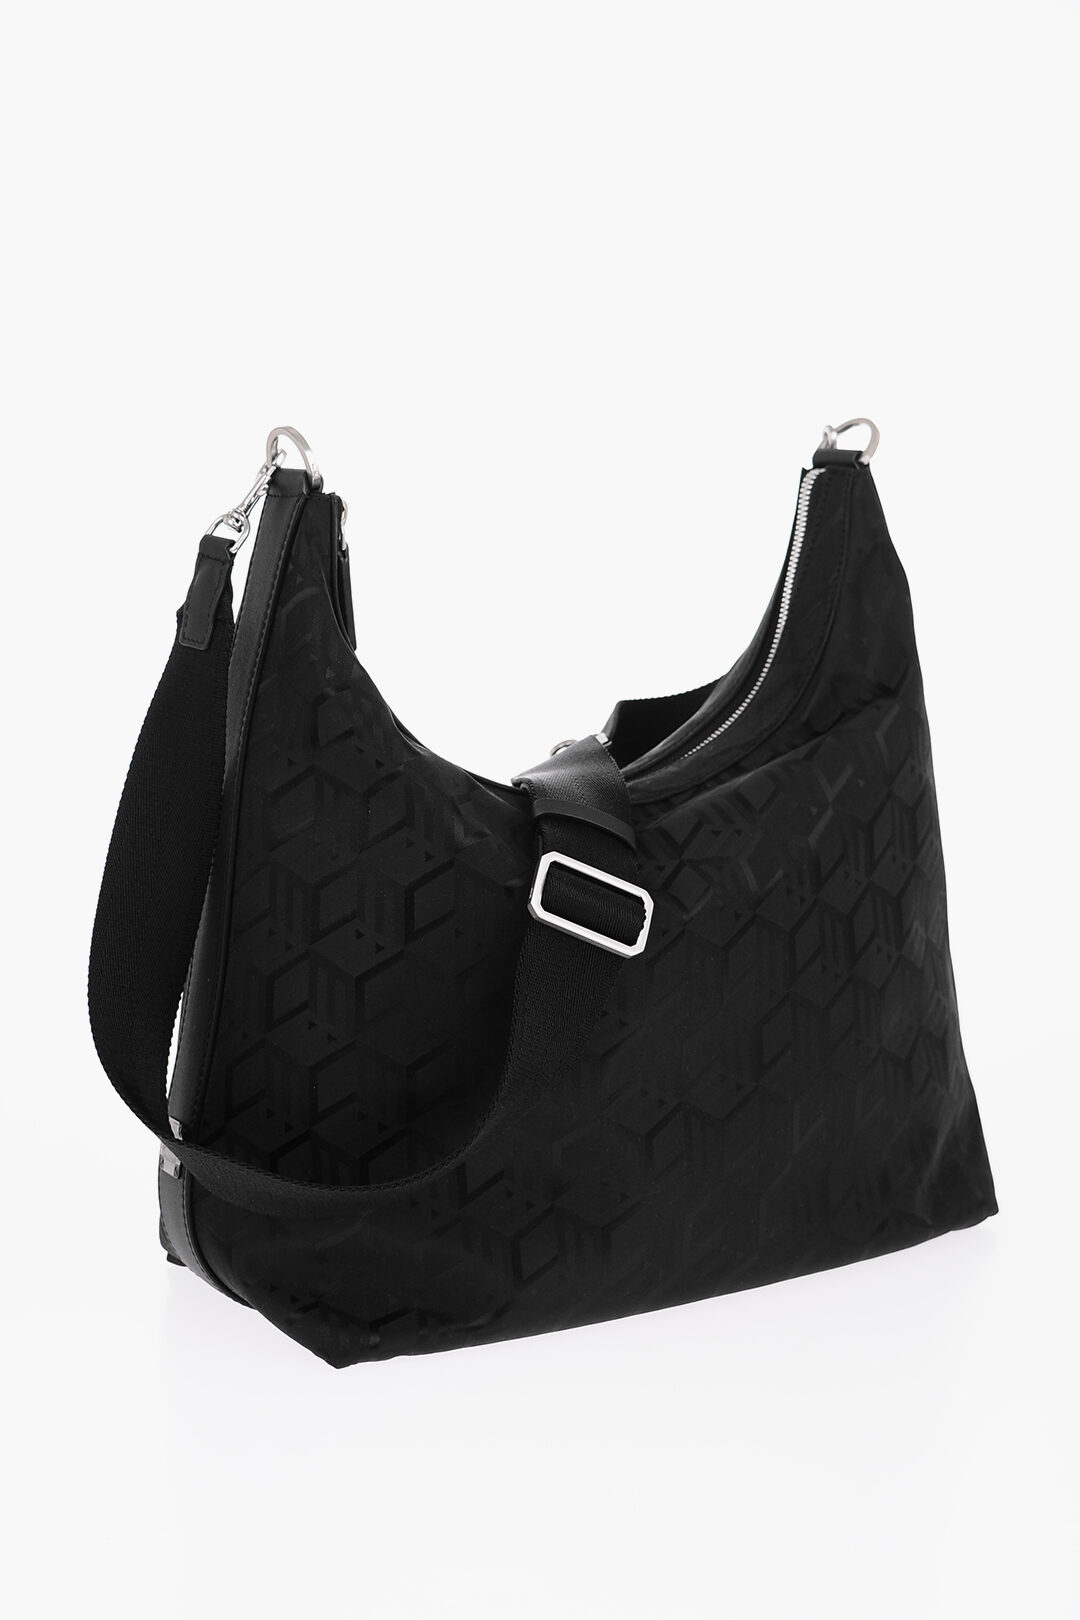 MCM Vintage Leather Handle Bag - Black Handle Bags, Handbags